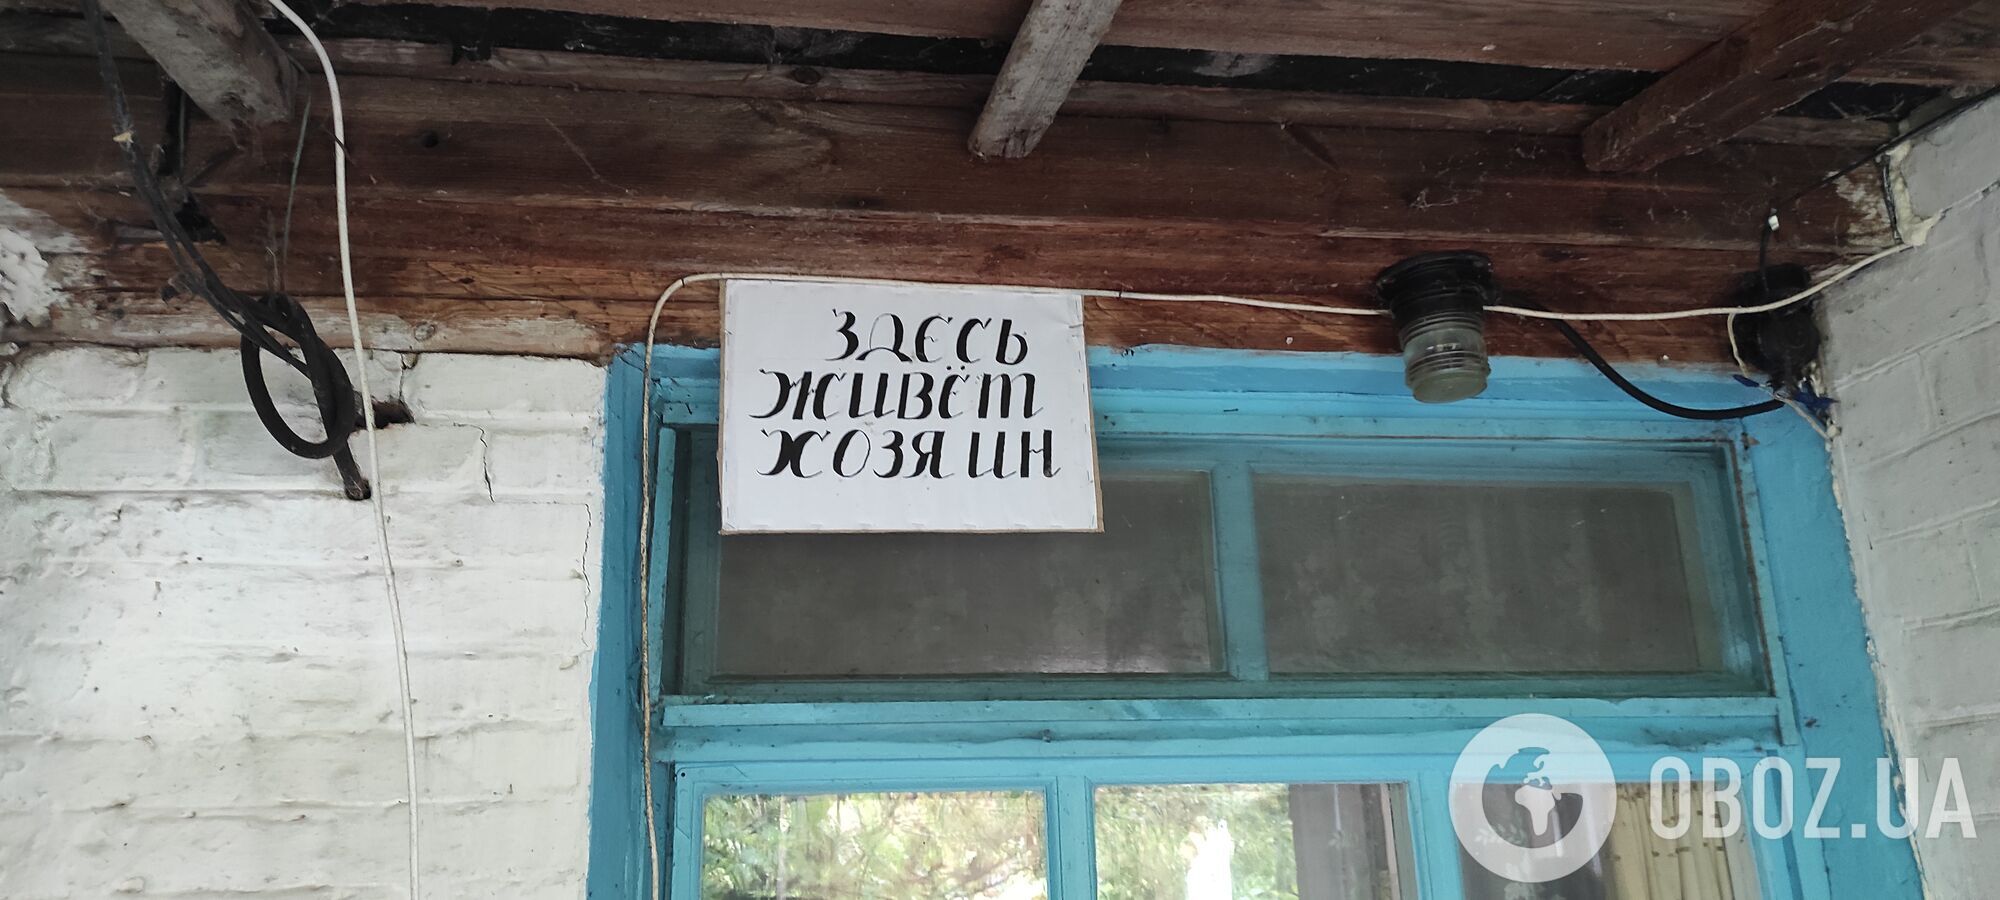 "У вас тут грязно?": оккупанты запрещали выходить и занимались мародерством. История самоселов Чернобыля во время оккупации